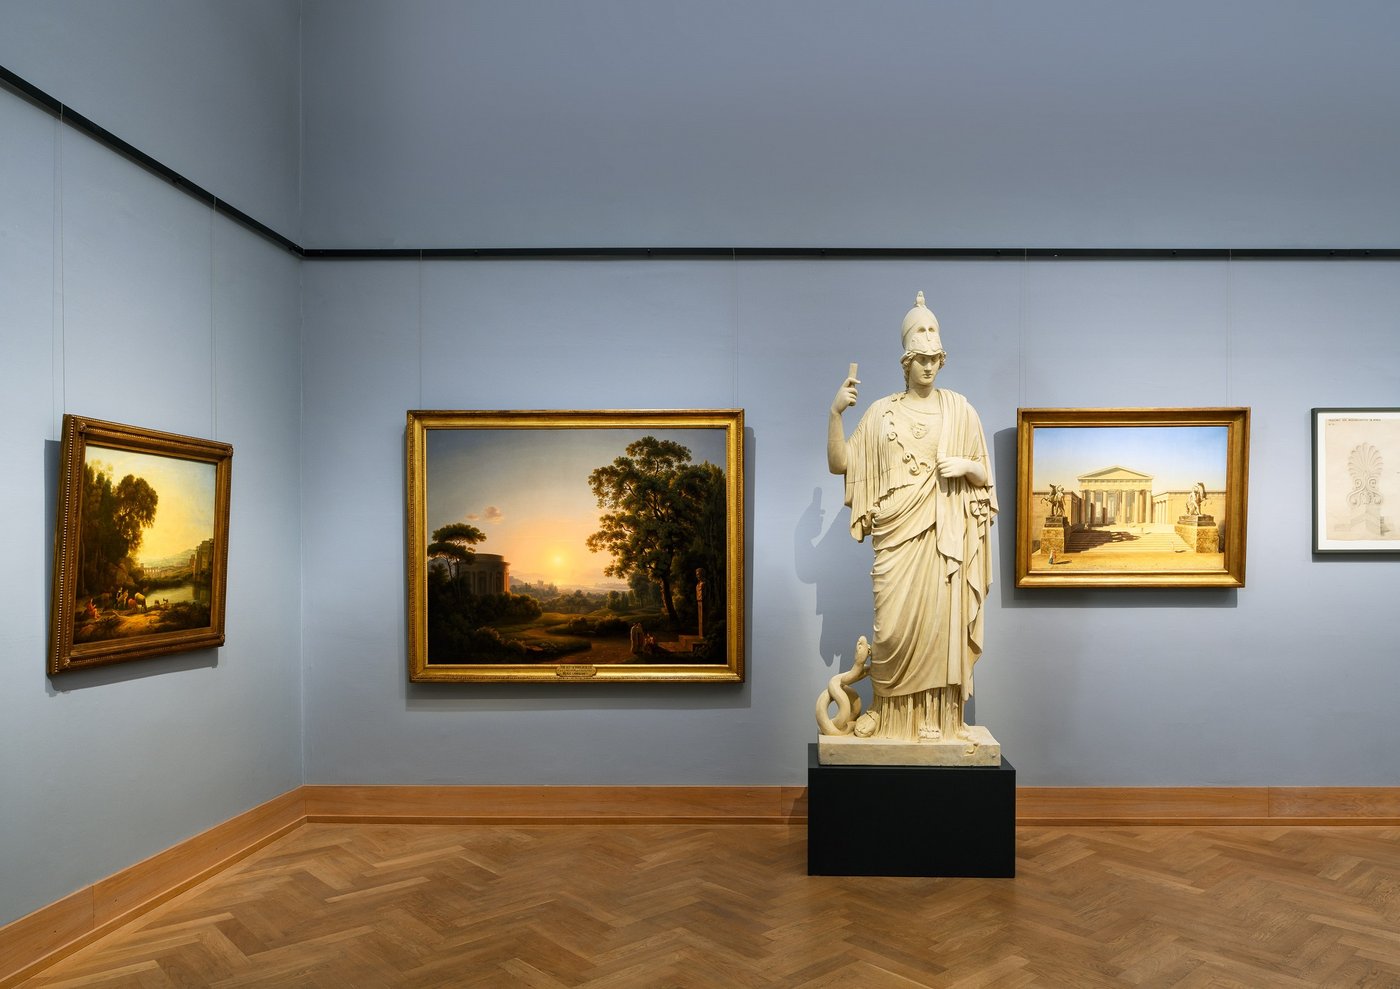 ein blau ausgemalter Ausstellungsraum  mit einer Skulptur und Fotografien sowie Malerei an der Wand